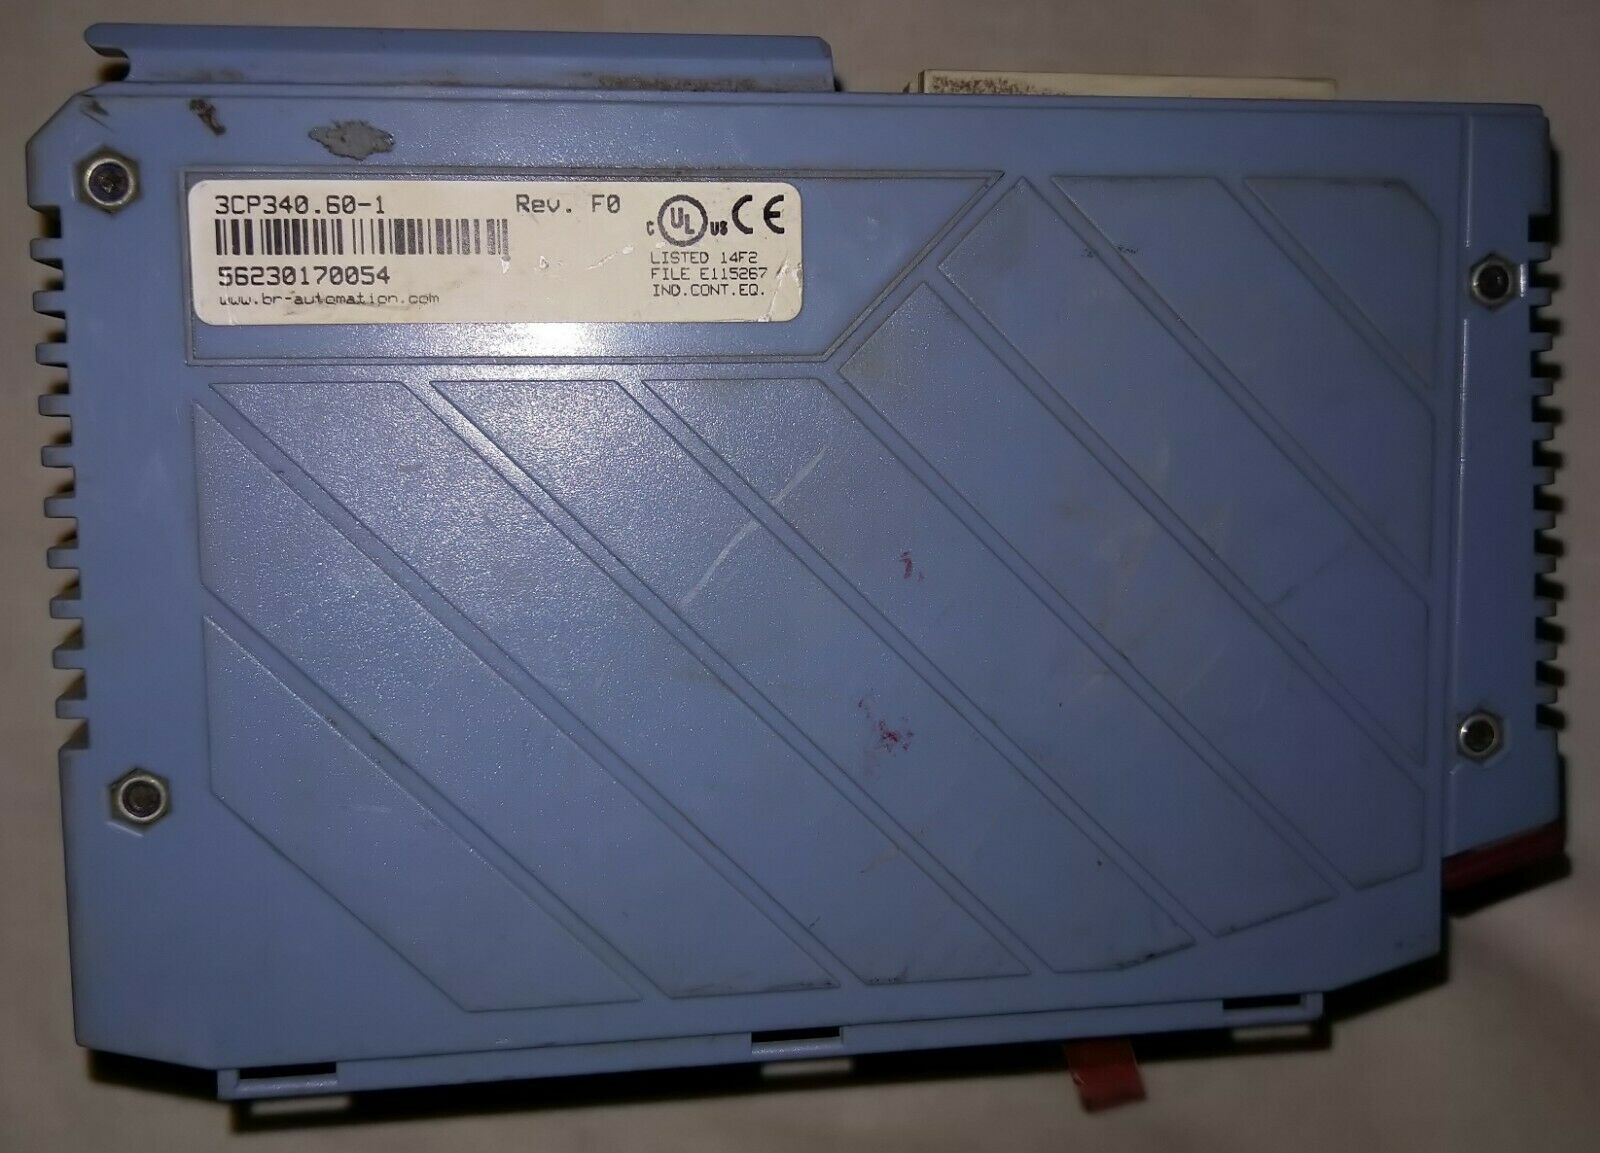 蓝盾 3cp340.60-1 CPU 